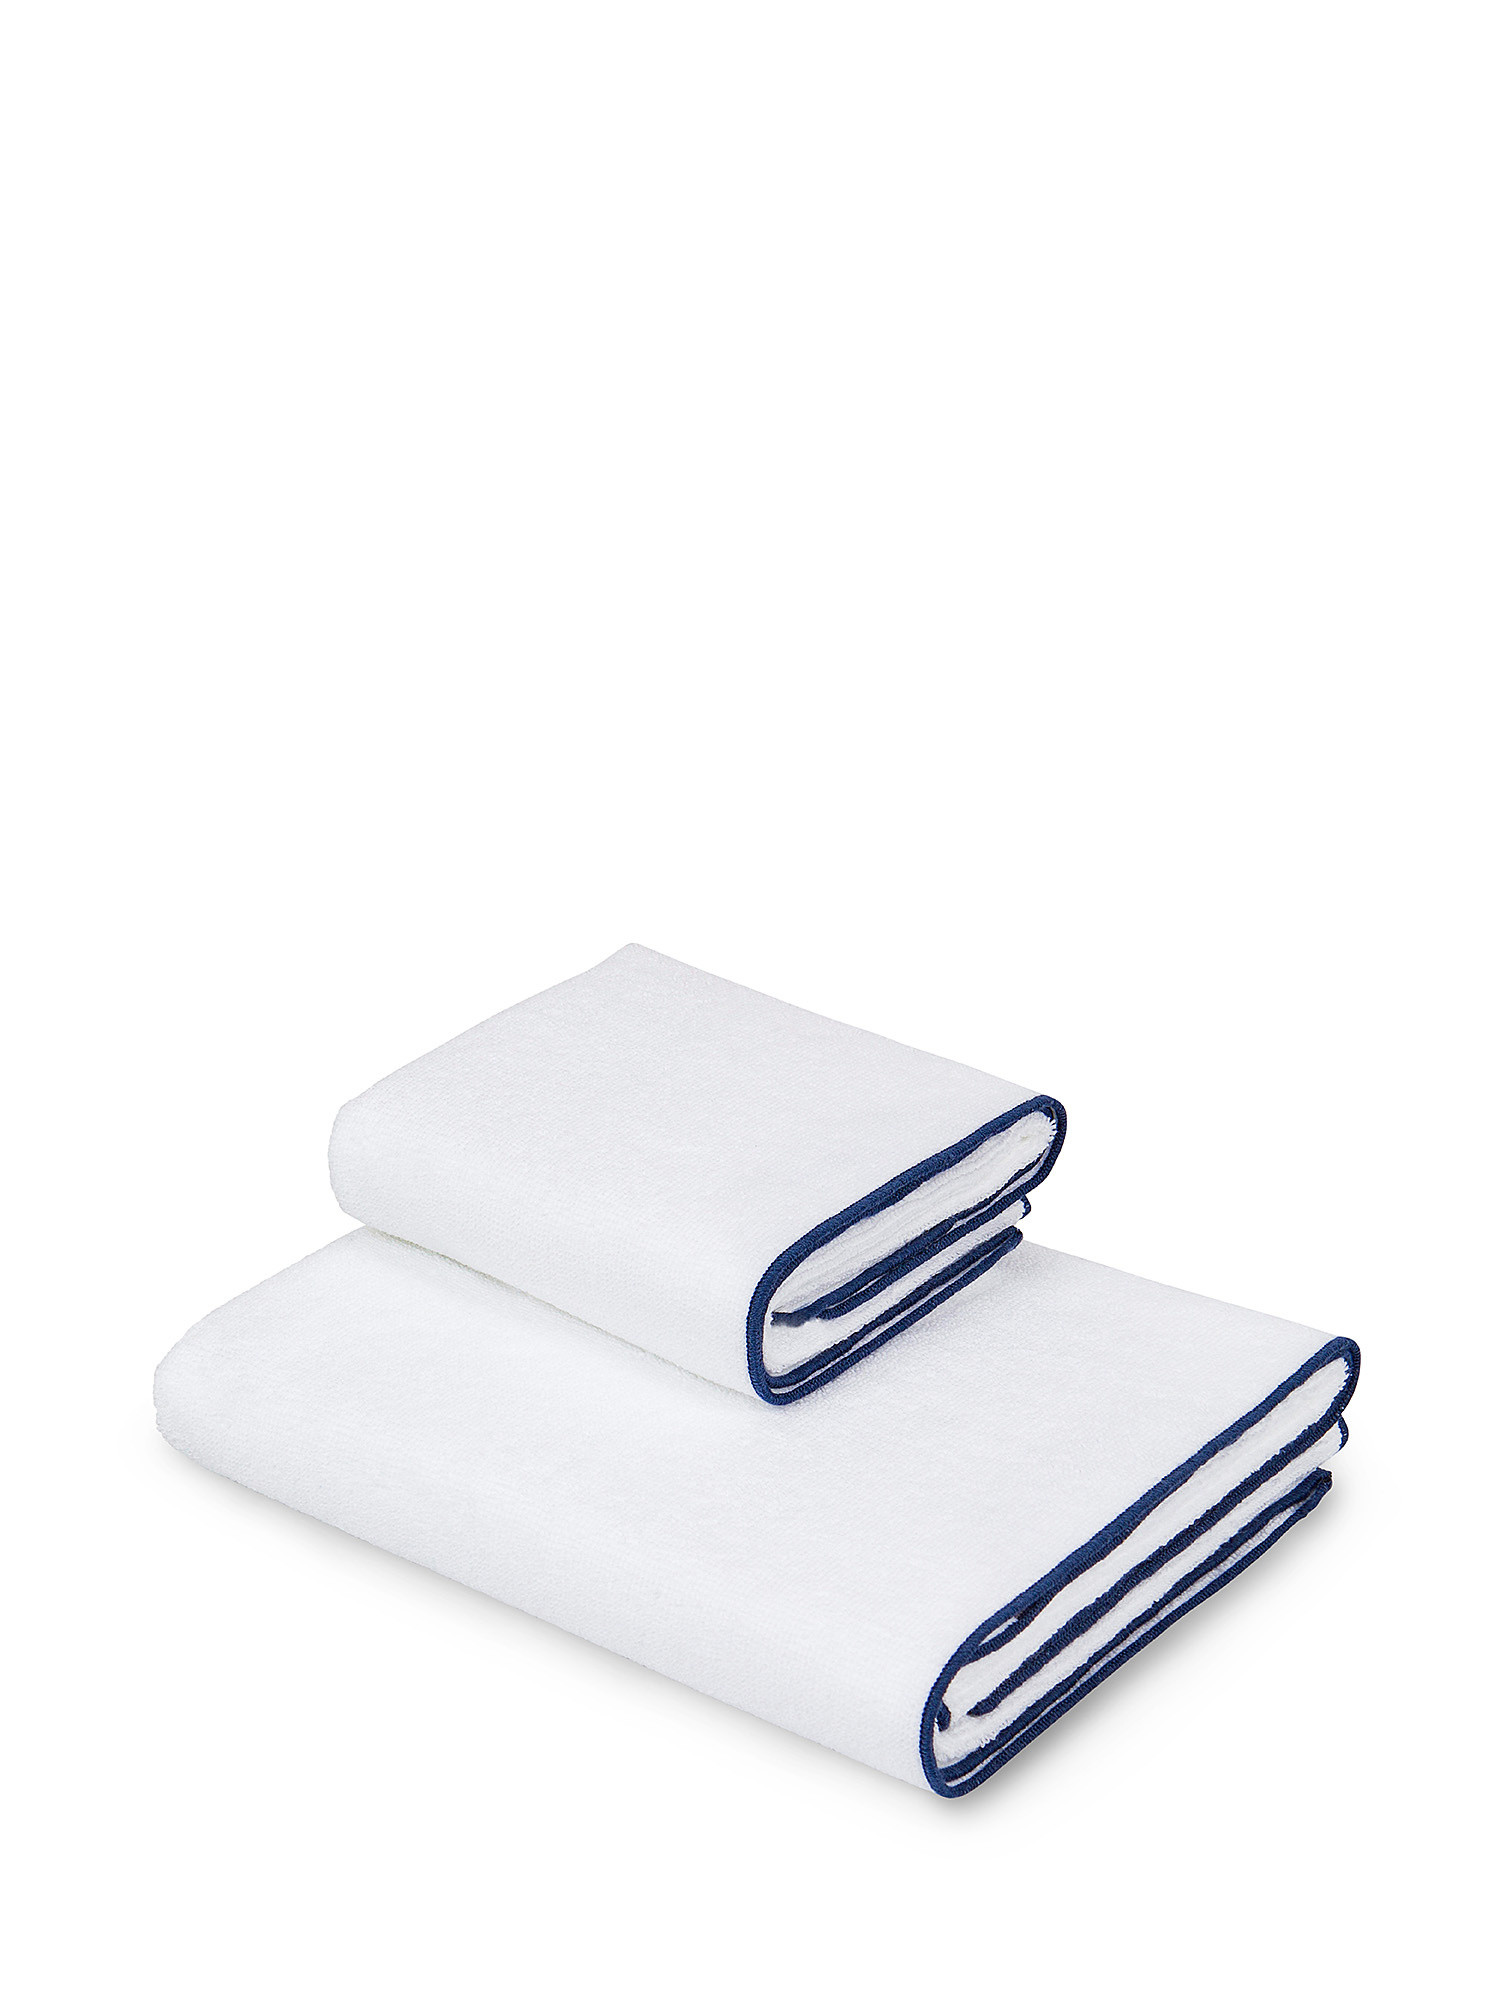 Asciugamano in spugna di puro cotone, Blu scuro, large image number 0